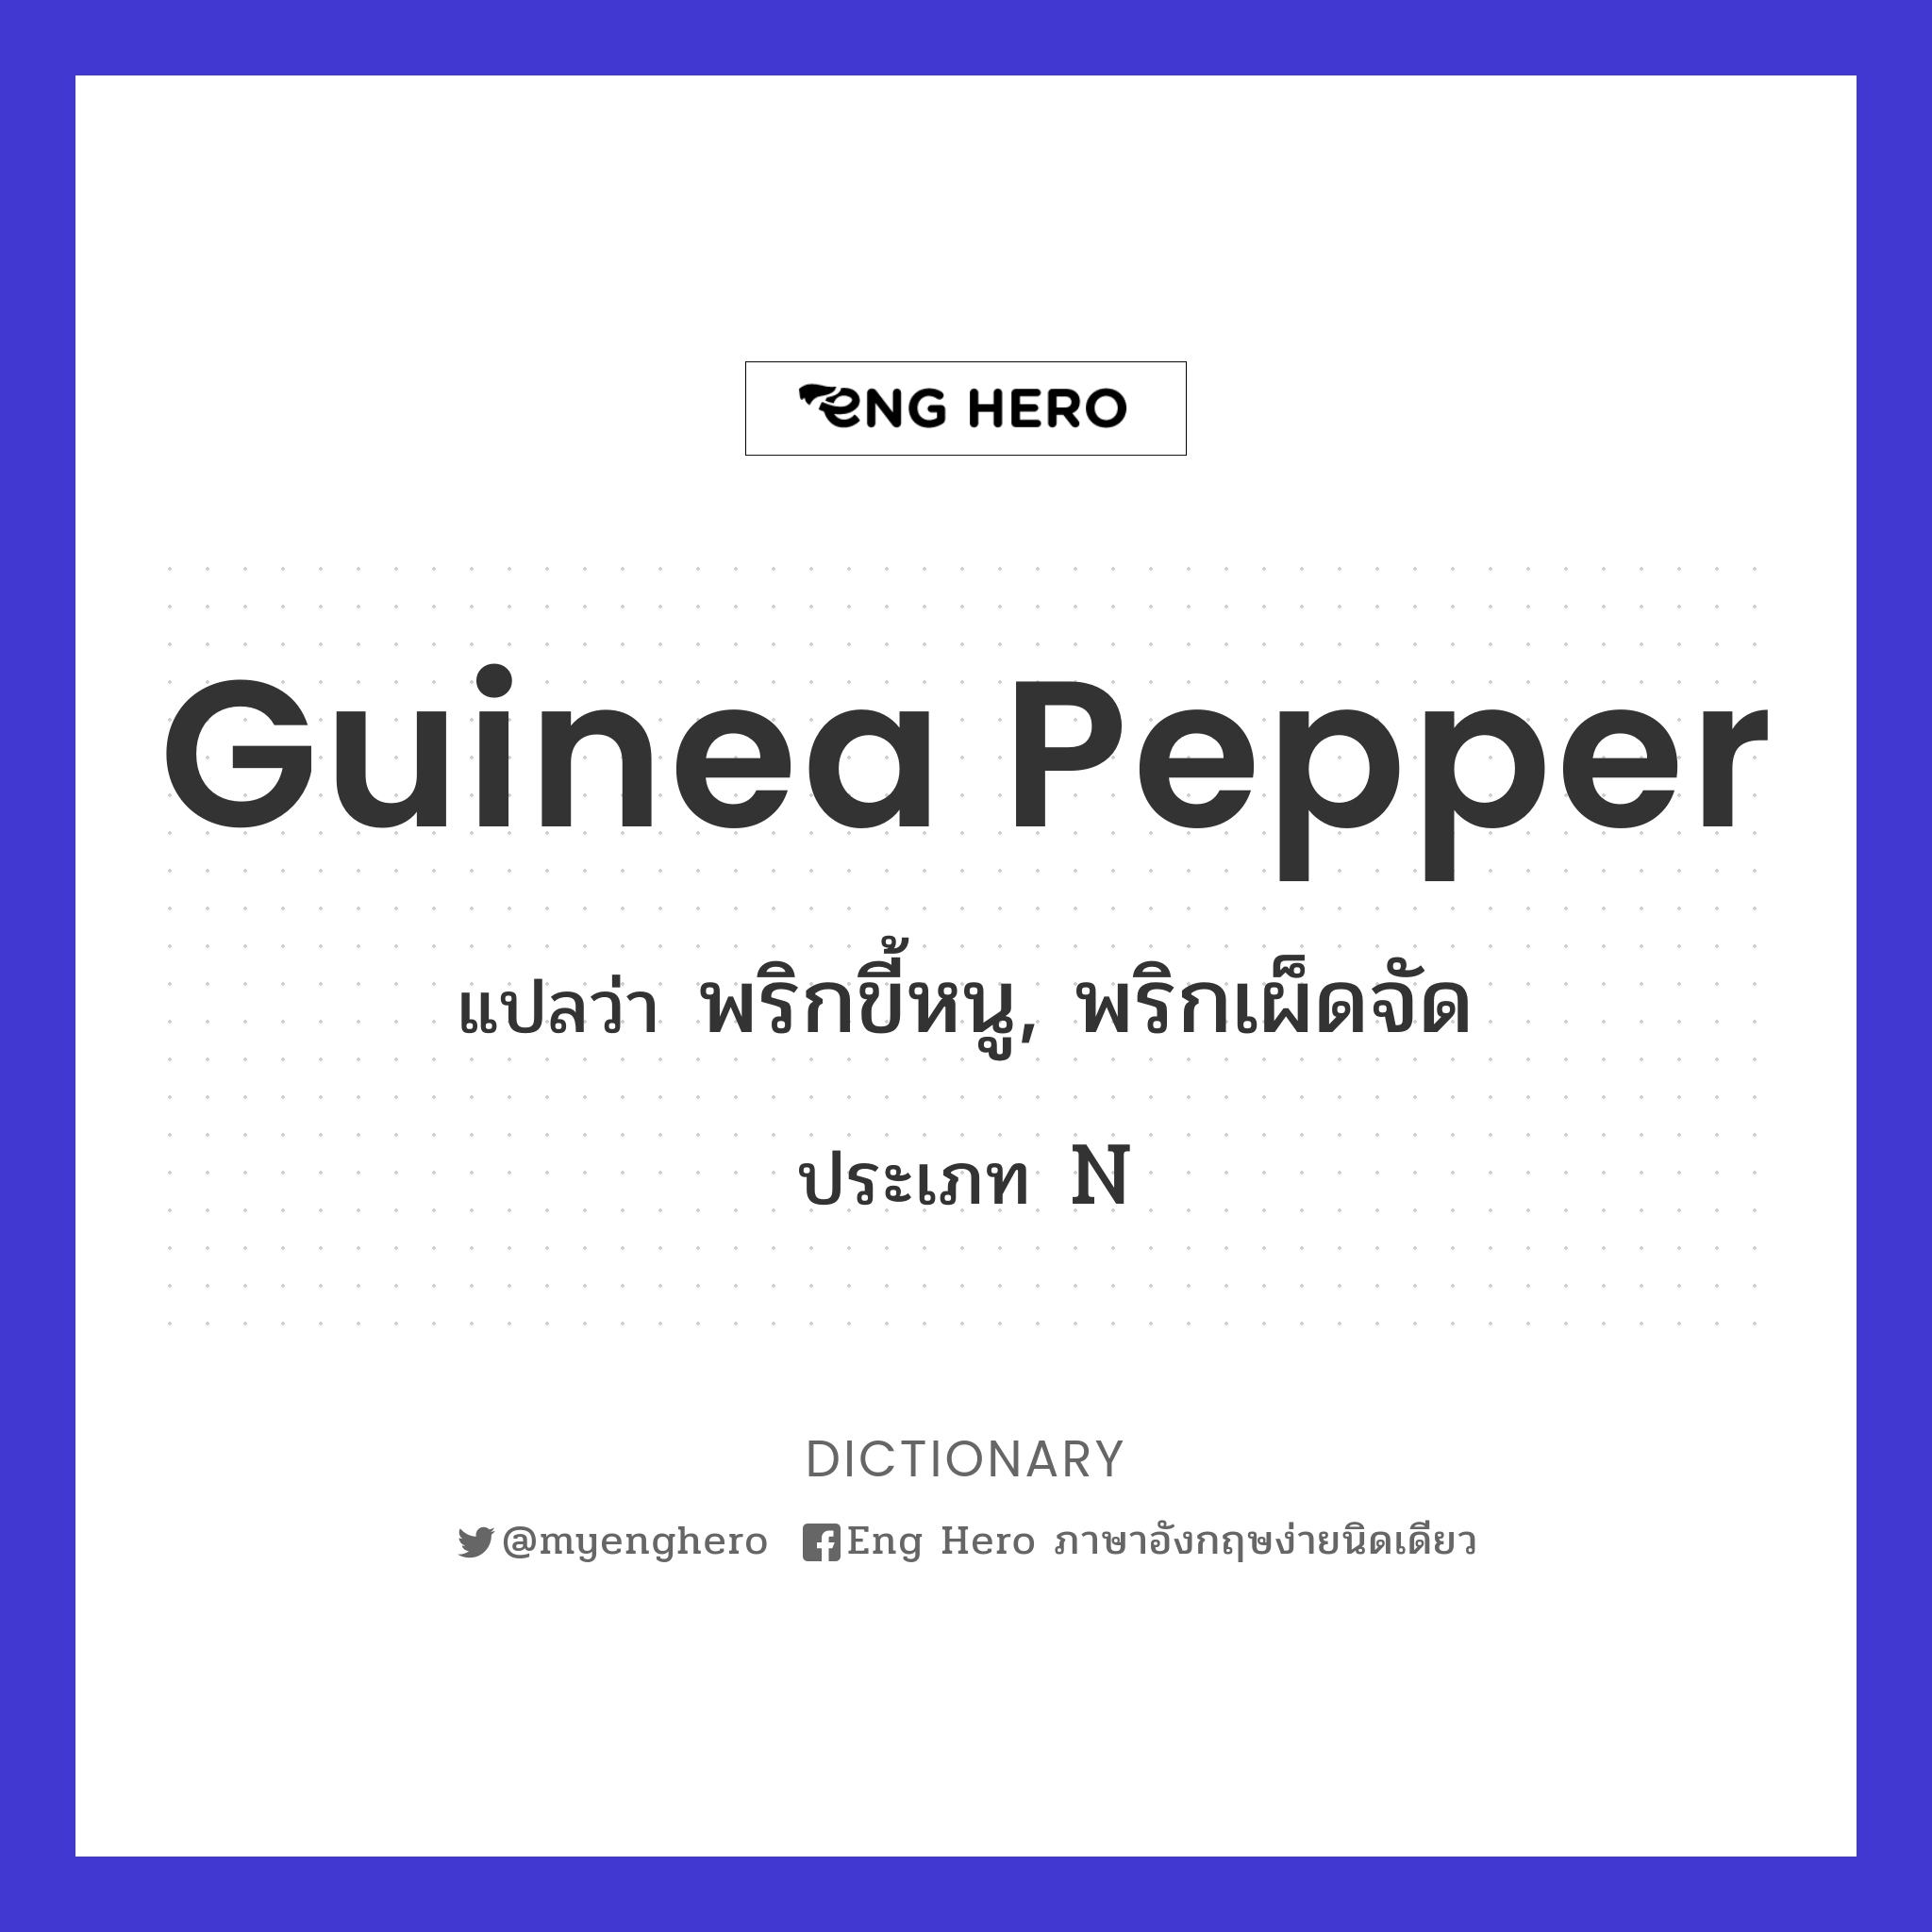 Guinea pepper